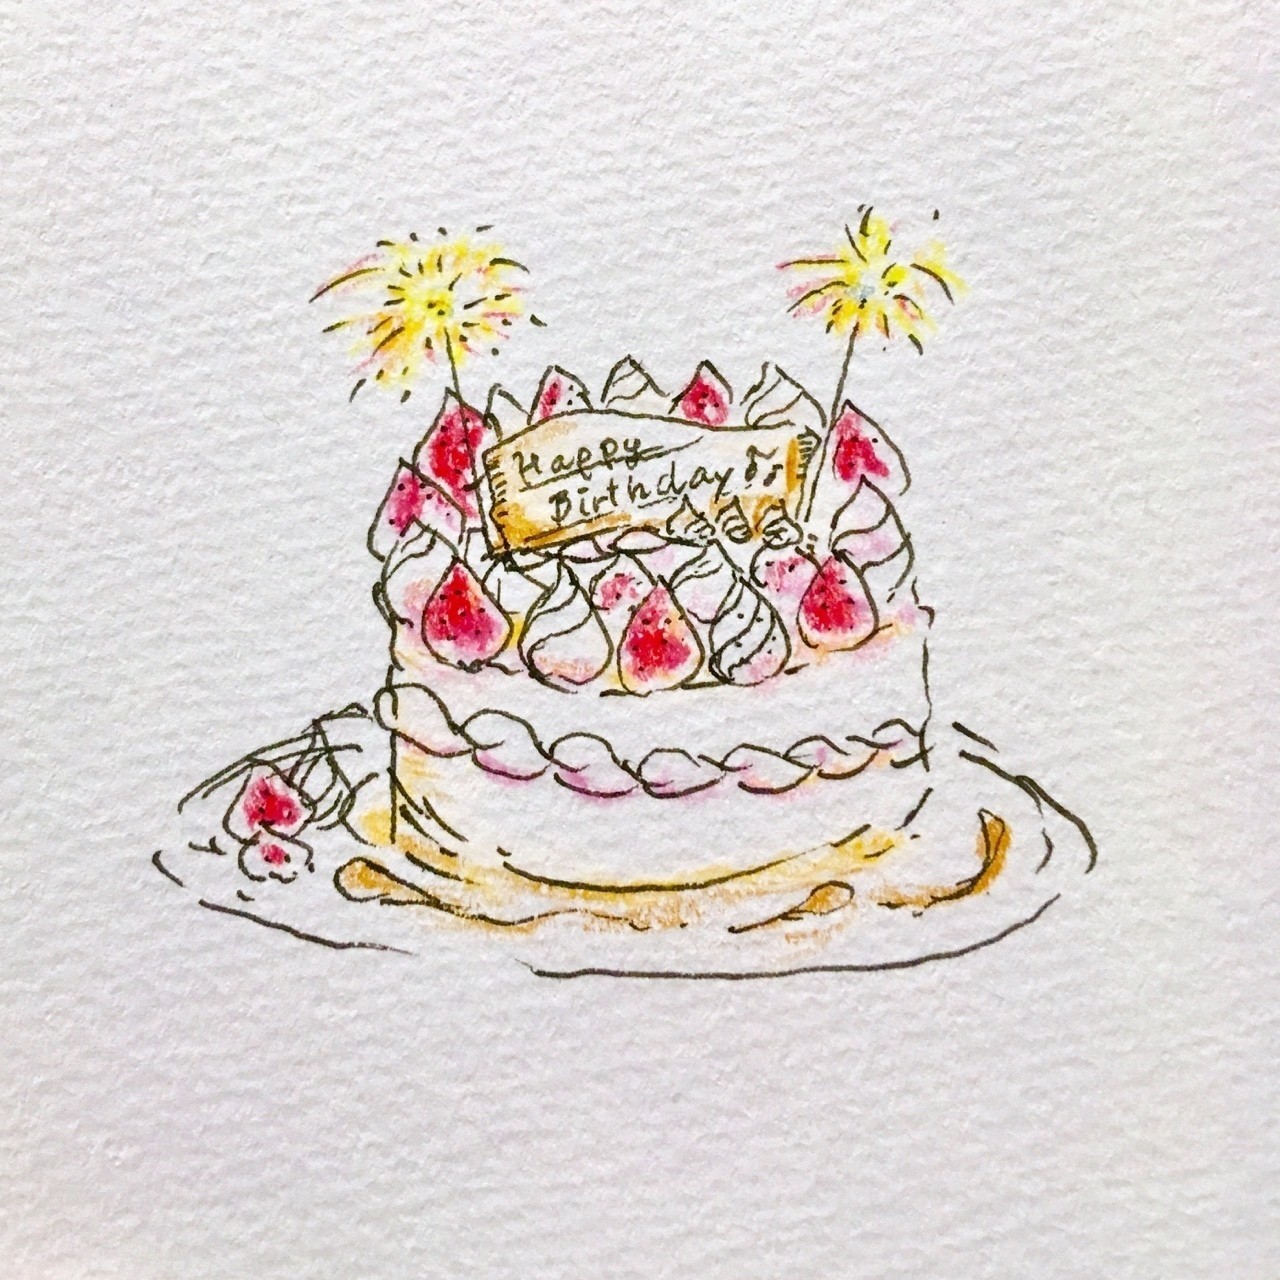 50 お 誕生 日 ケーキ イラスト 美味しいお料理やケーキ